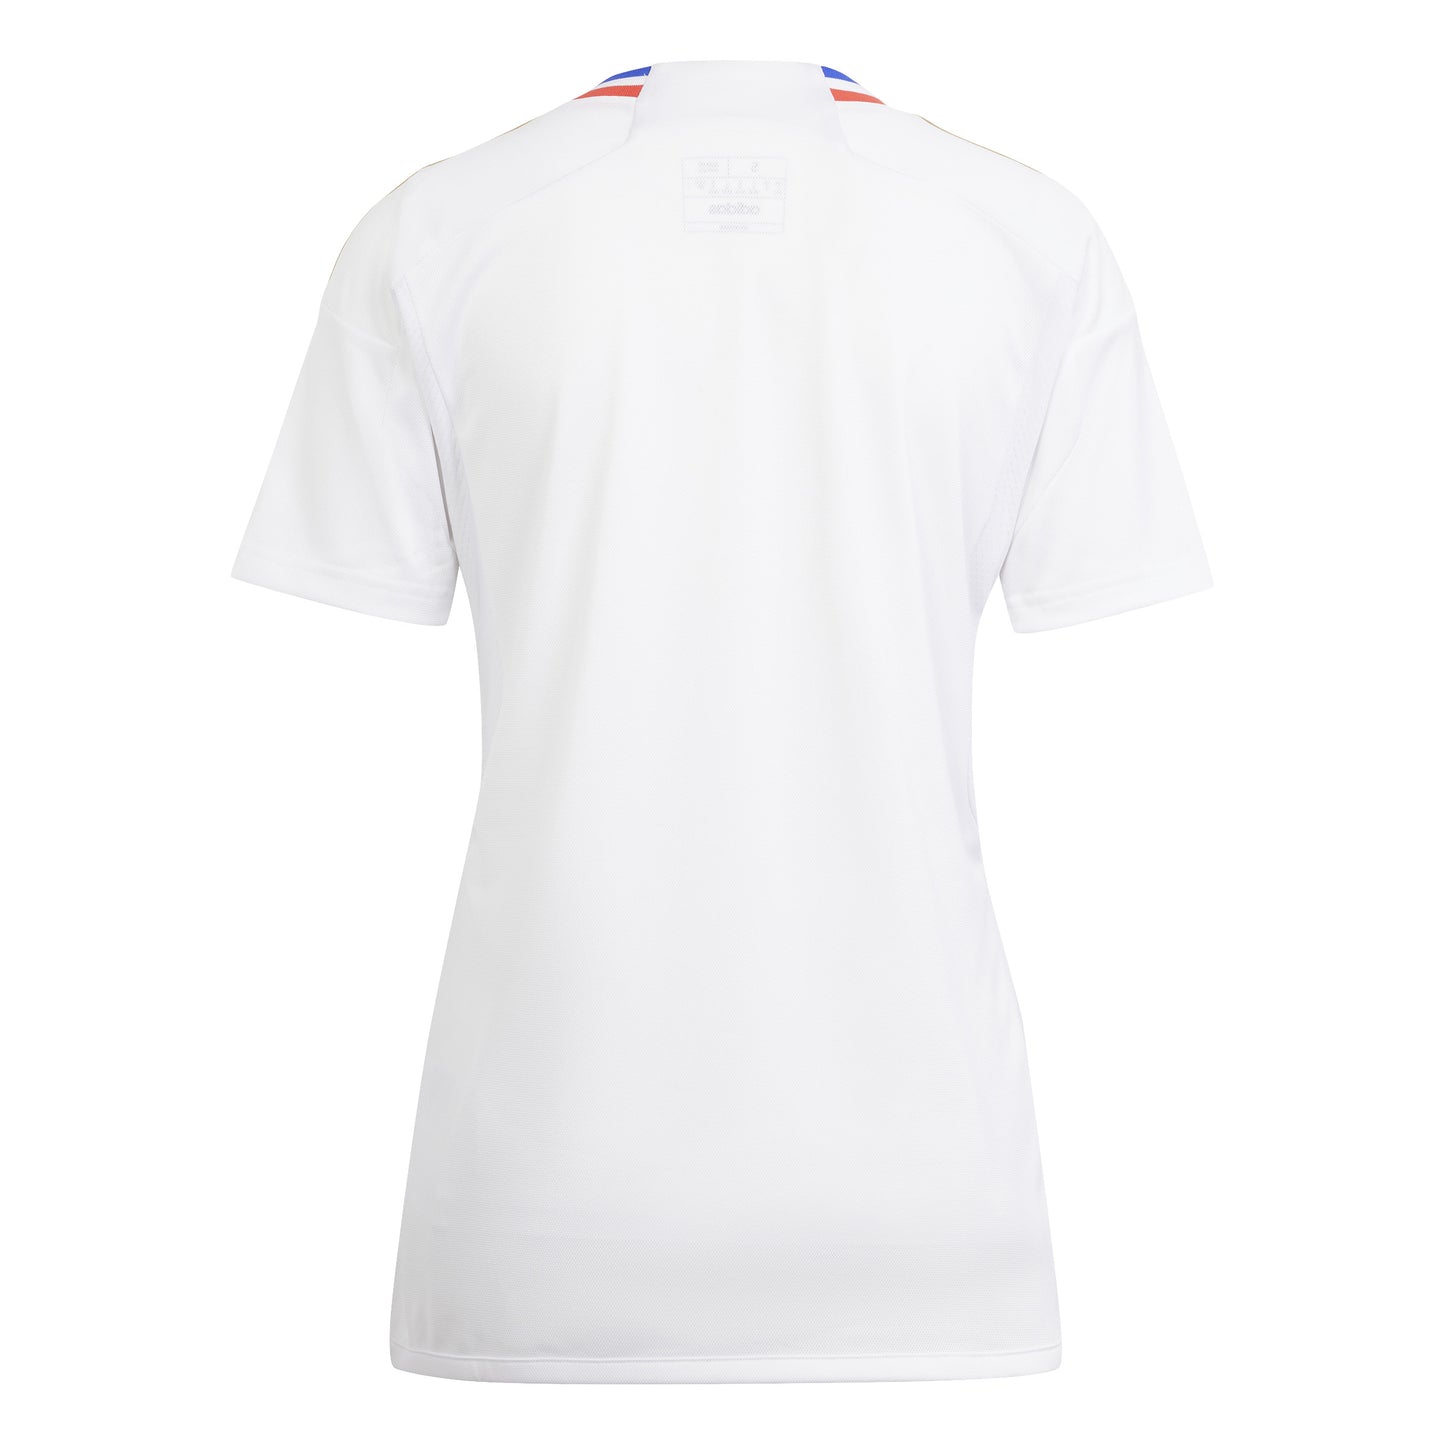 Camiseta Adidas Stadium de corte curvo de primera equipación del Olympique Lyonnais 23/24